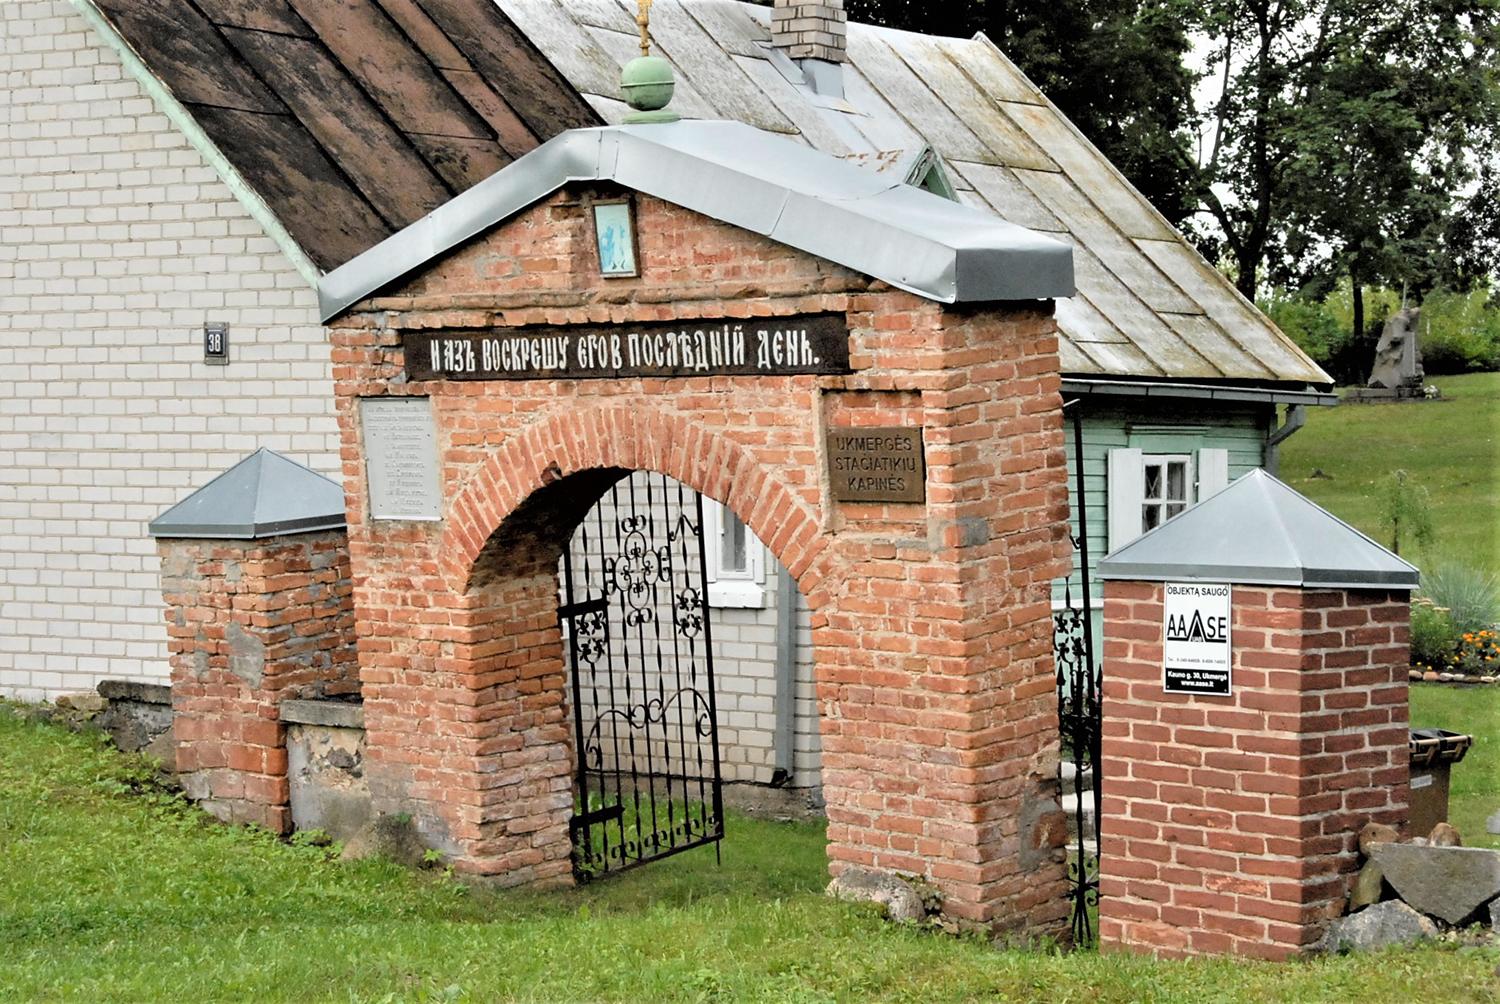 Stačiatikių kapinių vartų situacija savivaldybei žinoma / Stačiatikių kapinių vartai pasvirę jau seniai.  Gedimino Nemunaičio nuotr.